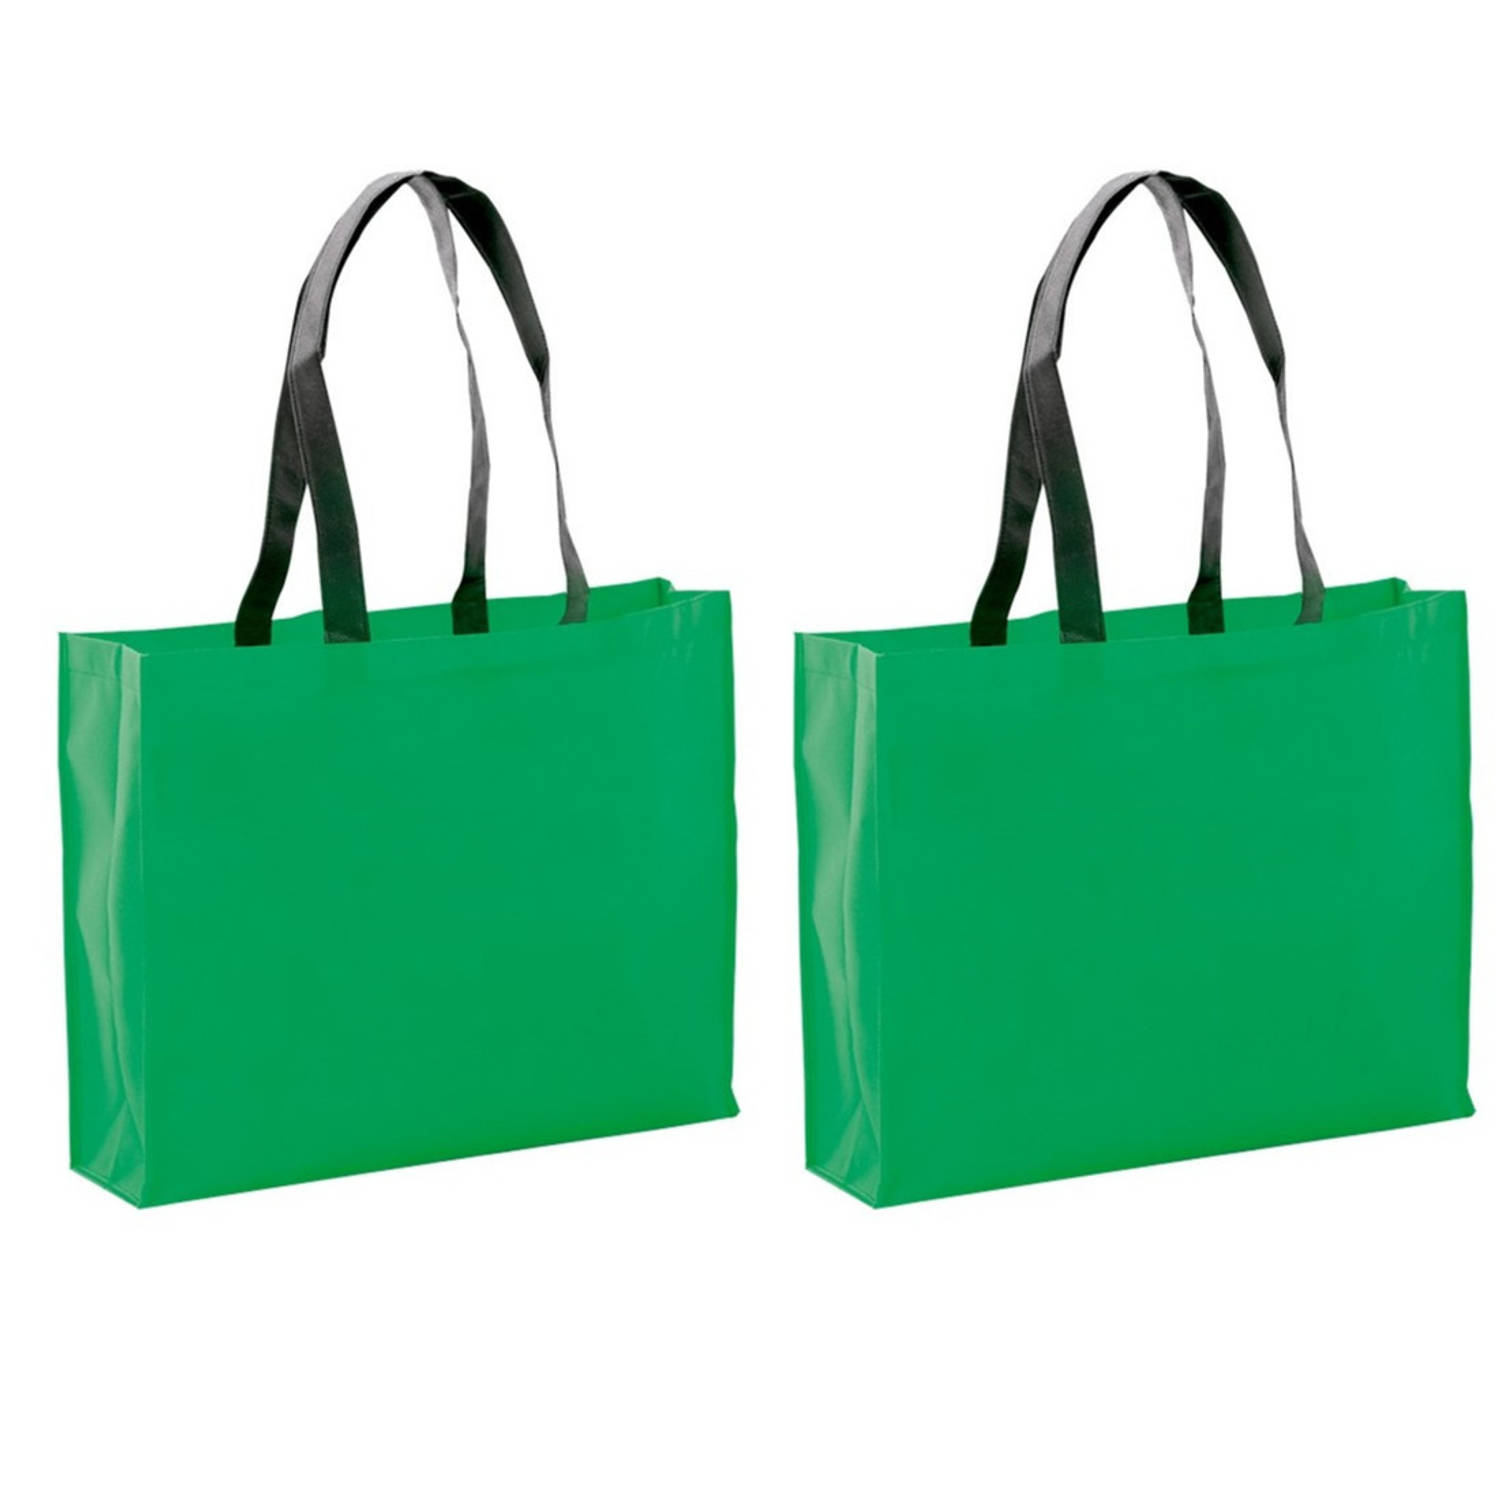 2x Stuks Draagtassen-schoudertassen-boodschappentassen In De Kleur Groen 40 X 32 X 11 Cm Boodschappe